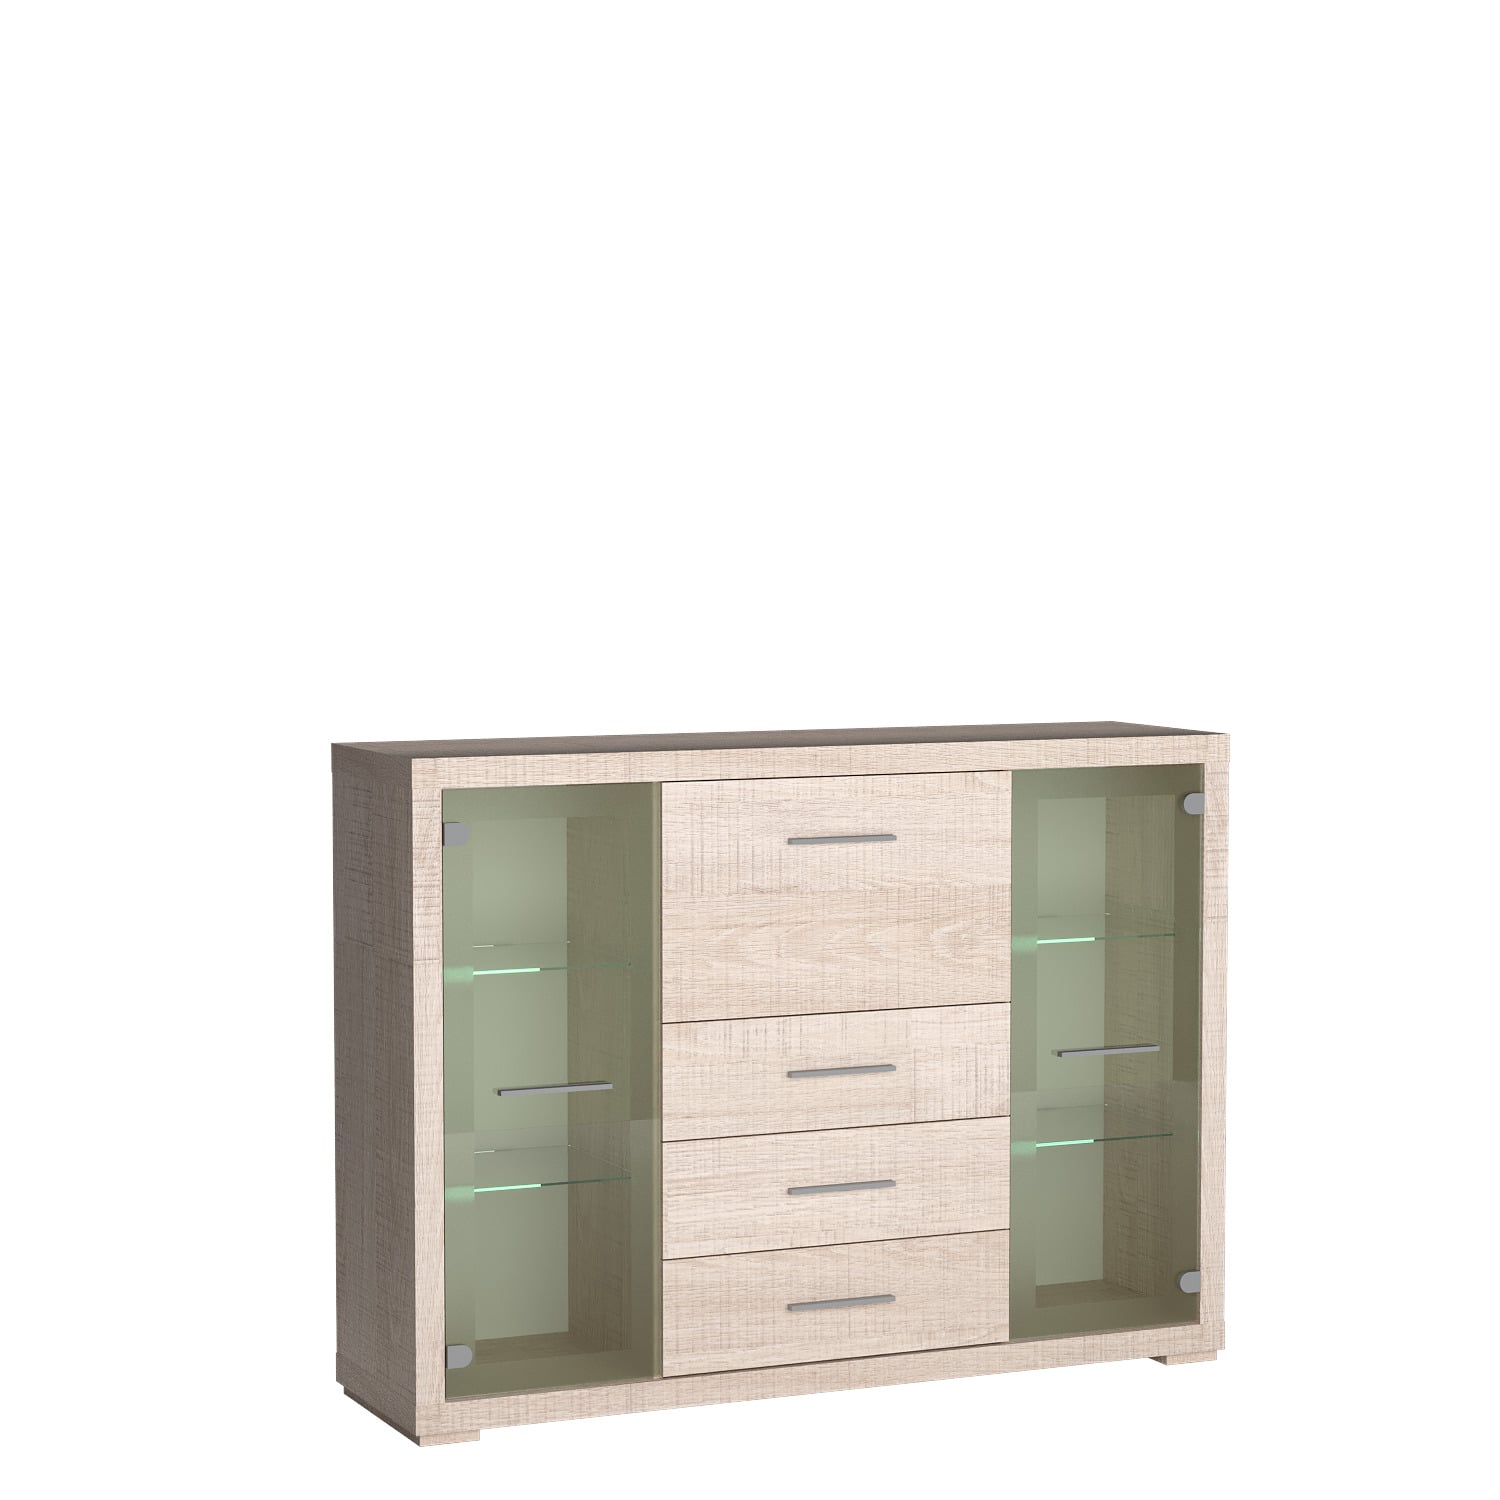 Jasna komoda witryna SANTOS szklane fronty szuflady srebrne uchwyty i stopki prezentuje się elegancko.